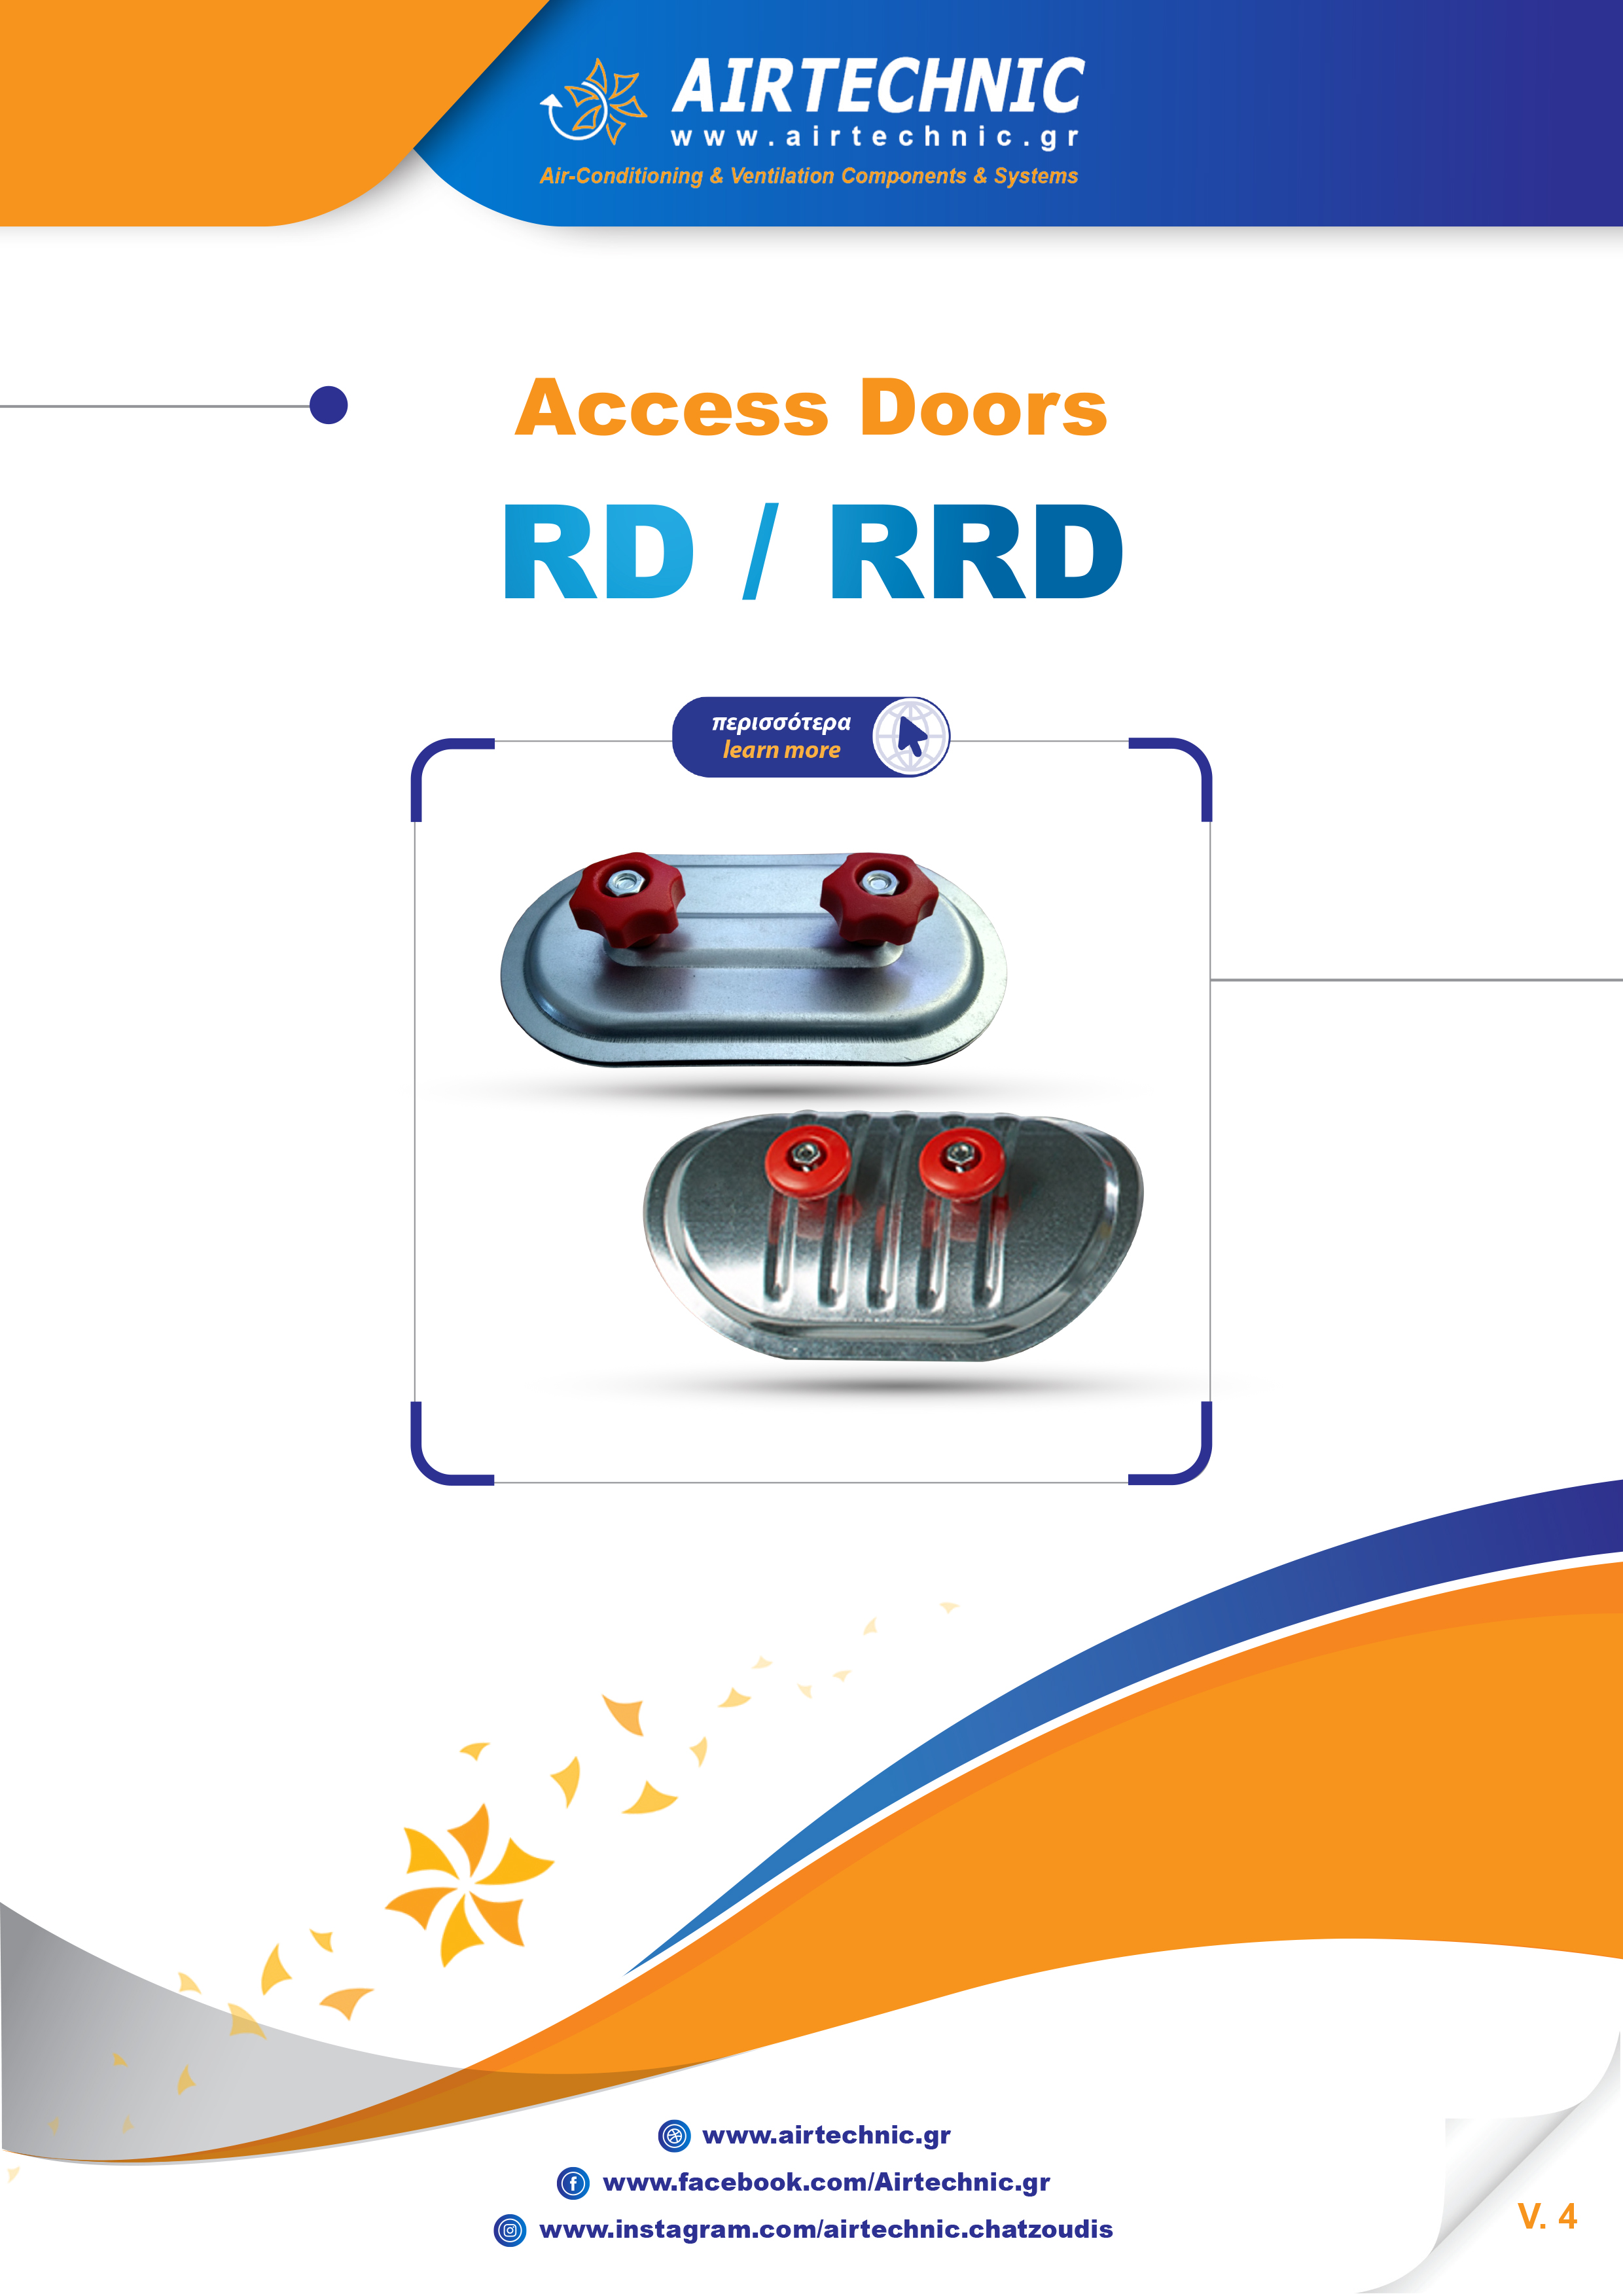 LEAFLET "ACCESS DOORS RD & RRD"